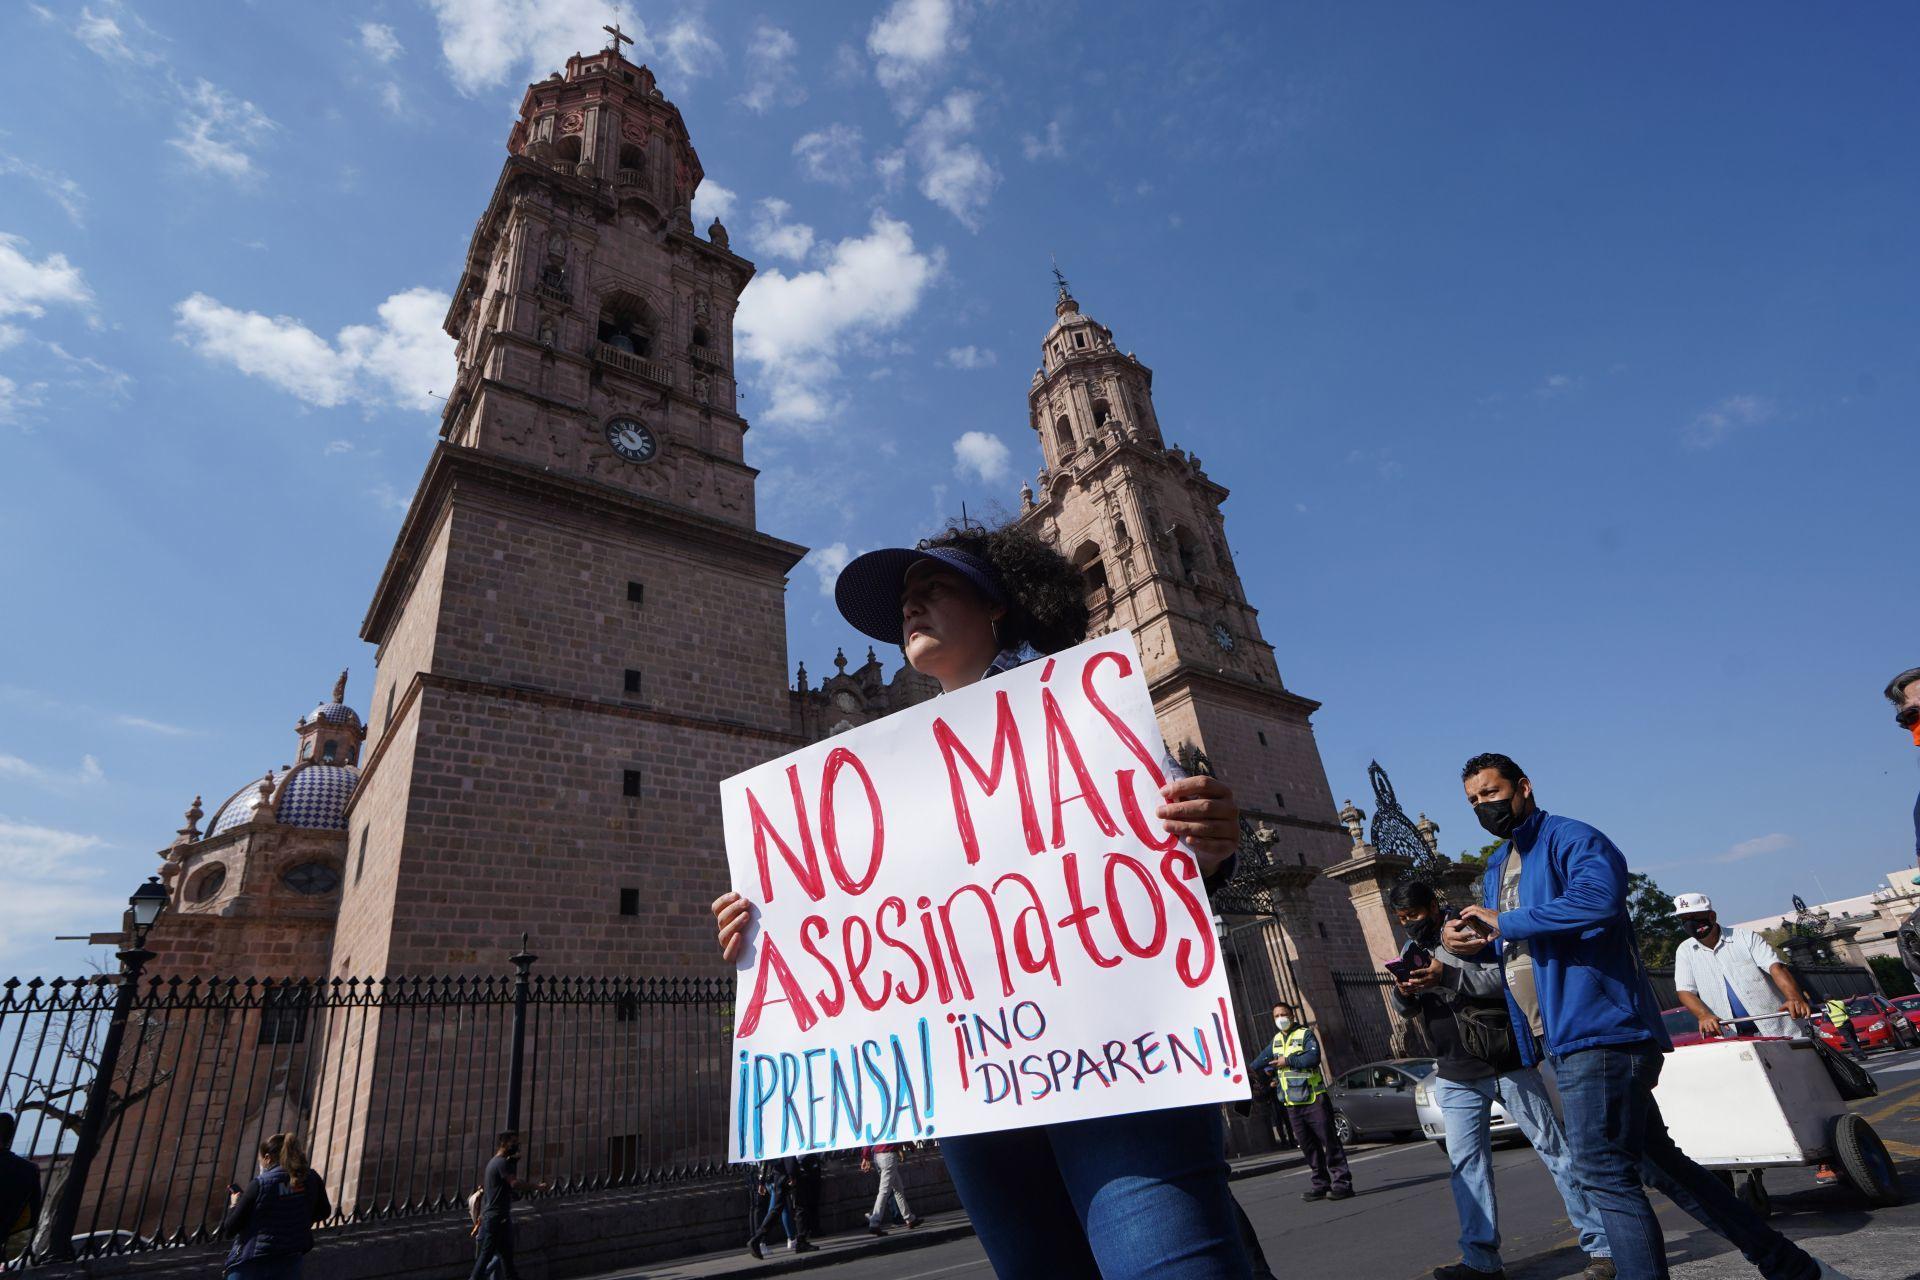 “Nuestra defensa era la pluma y una libreta”: Cierra el medio Monitor Michoacán tras asesinato de su director